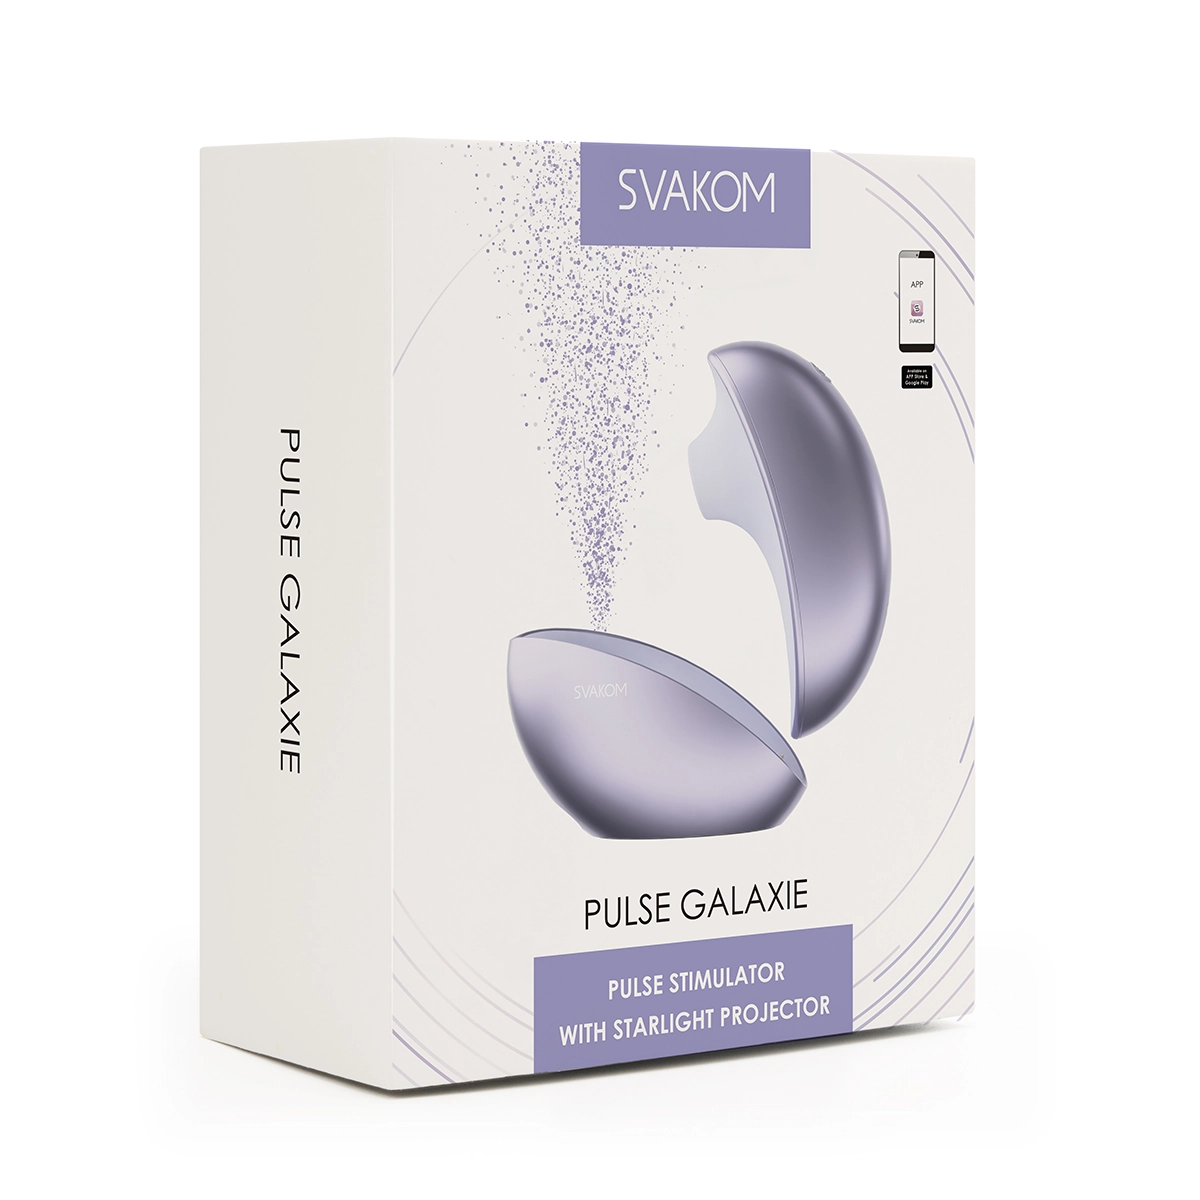 Nơi bán Svakom Pulse Galaxie phát sáng máy bú hút thổi kích thích âm vật kết nối App có tốt không?